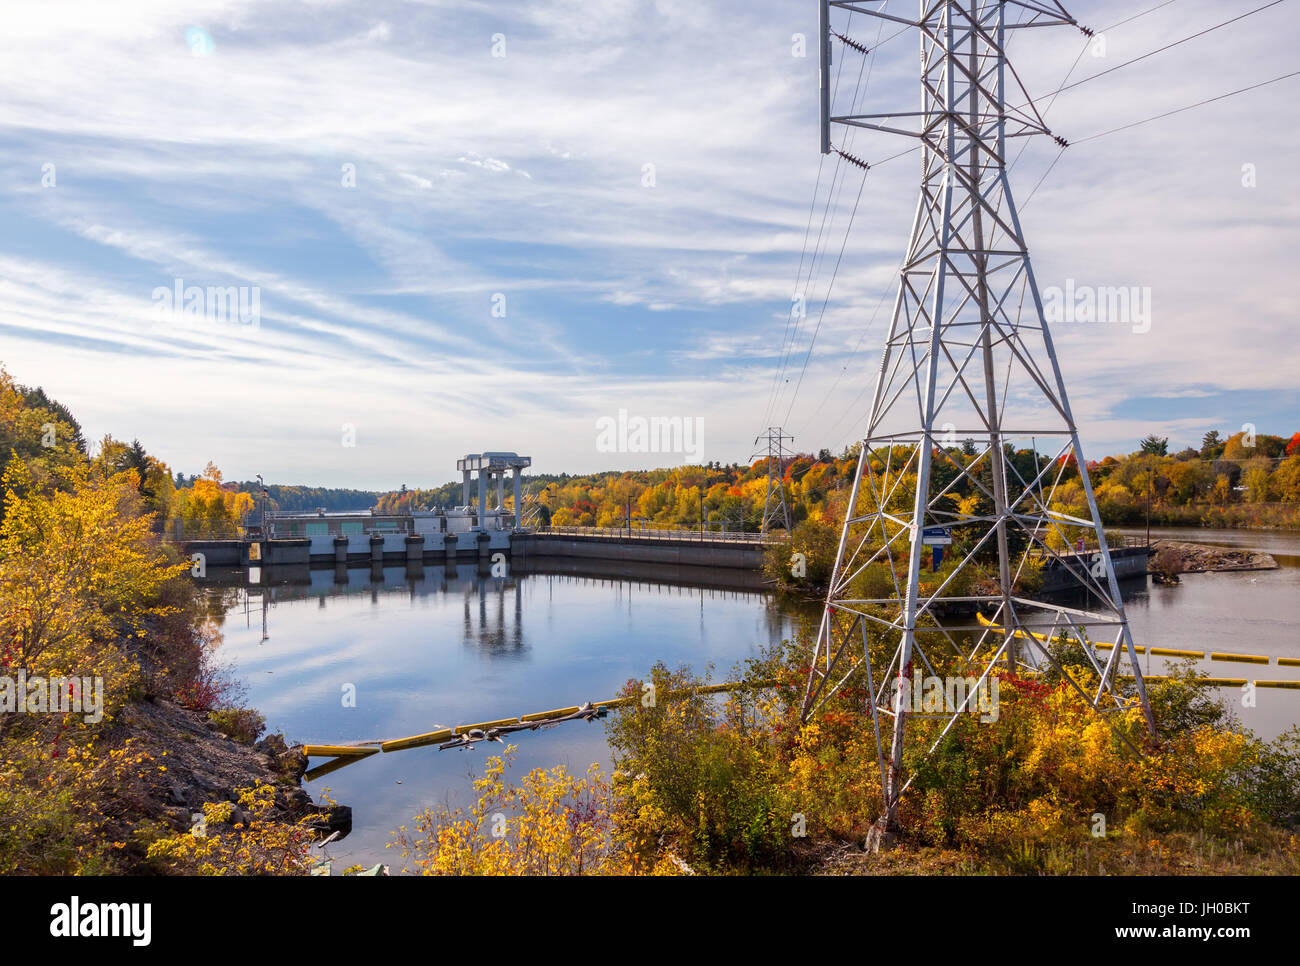 La Centrale Dufferin, Centrale hydro-électrique à Dufferin Buckingham est un barrage sur la rivière du Lièvre ou de la rivière du Lièvre à Buckingham, Québec. Banque D'Images